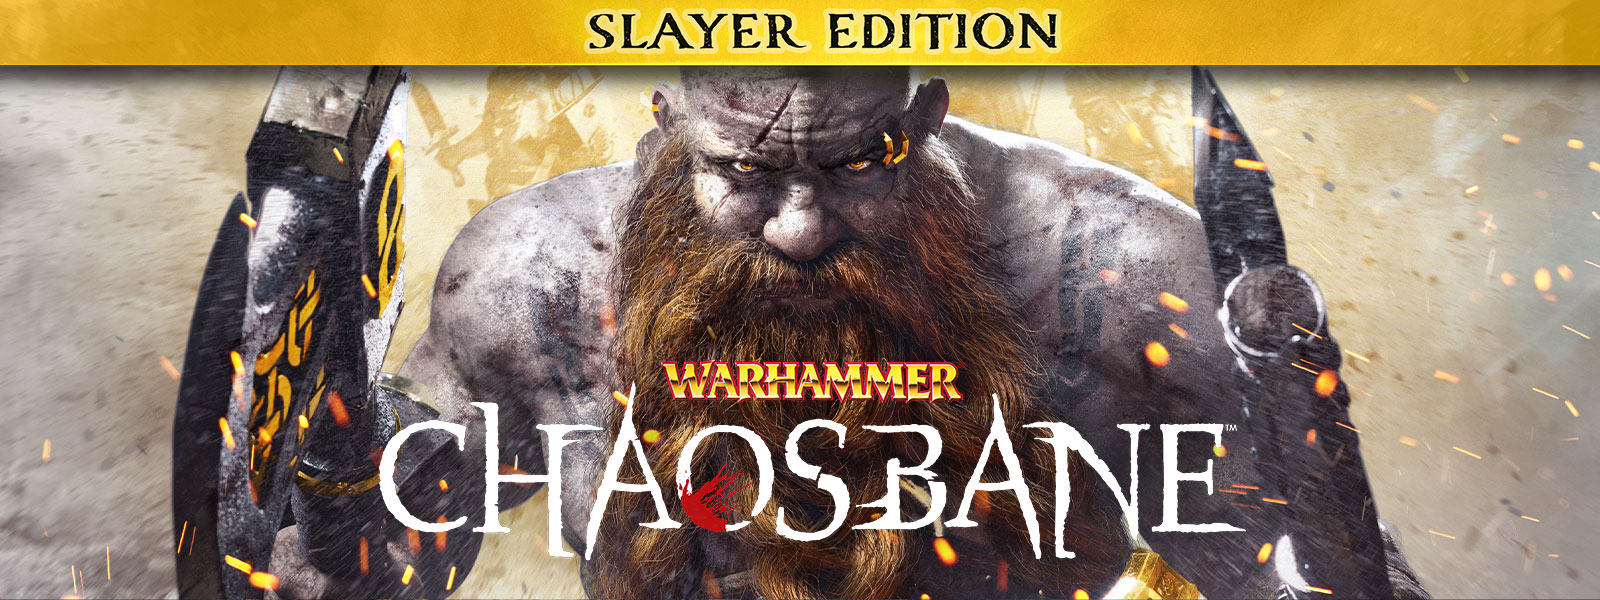 Warhammer: Chaosbane, Slayer Edition, Um homem barbudo caminha através de faíscas de fogo, carregando um machado em cada mão.